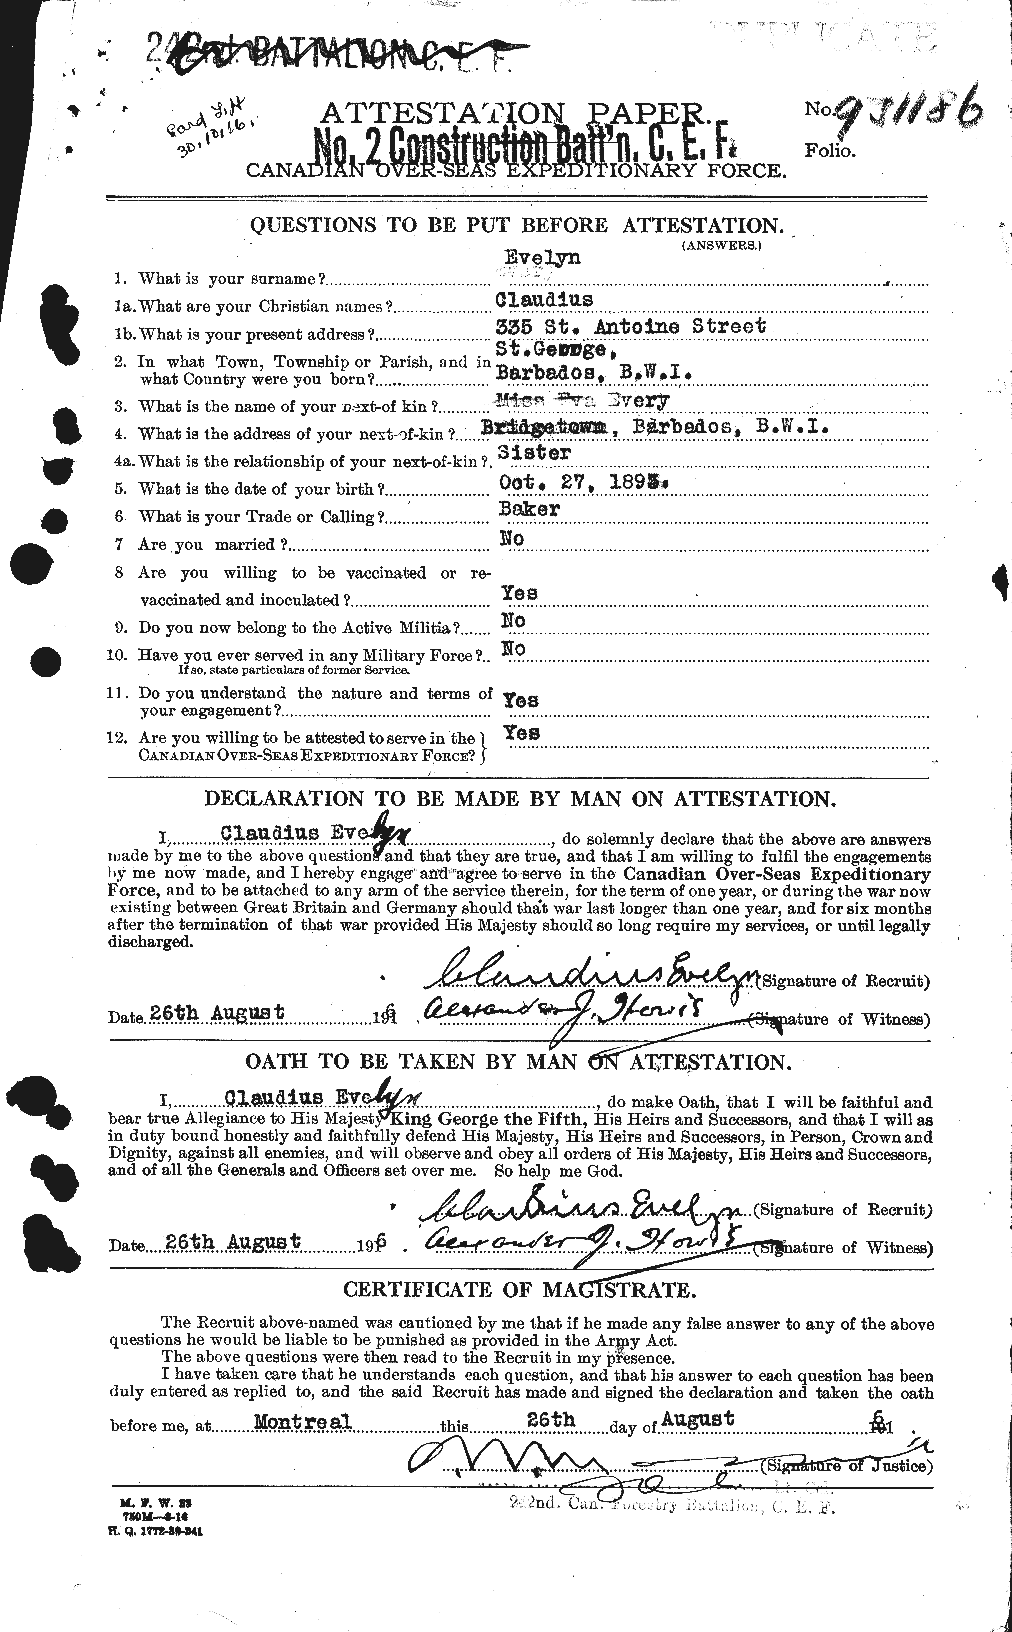 Dossiers du Personnel de la Première Guerre mondiale - CEC 315717a